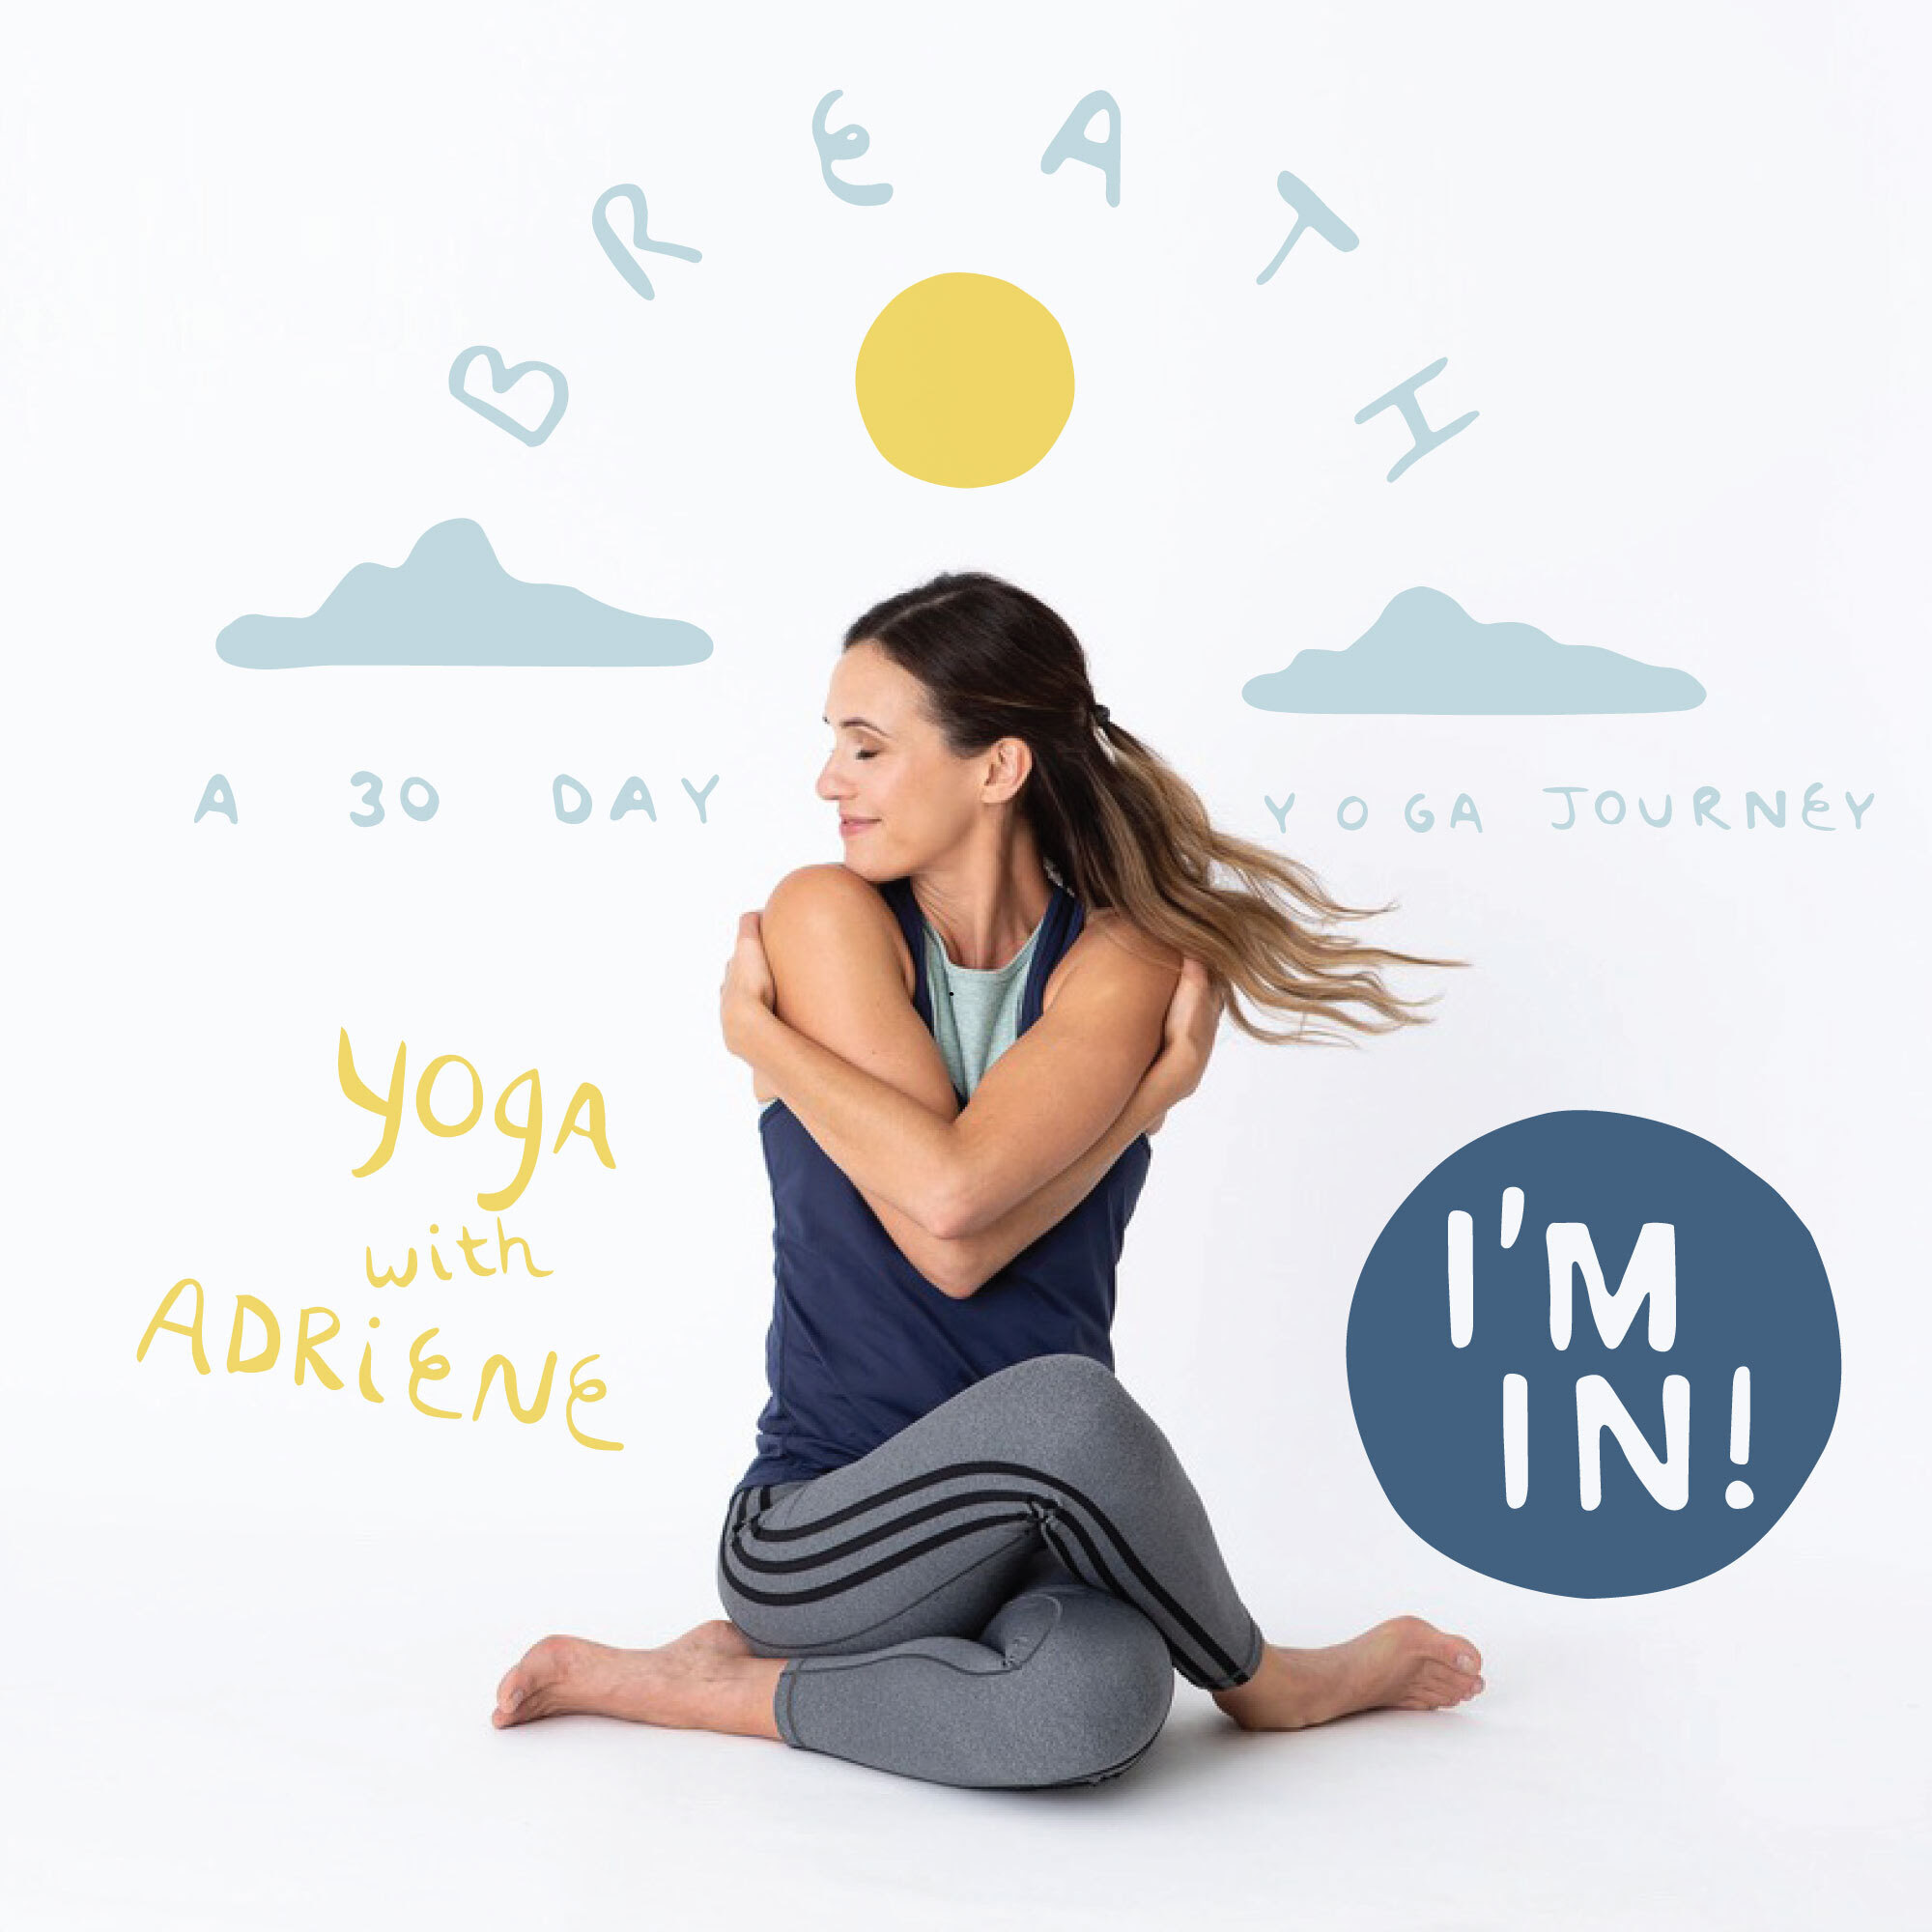 30 day yoga journey with adriene